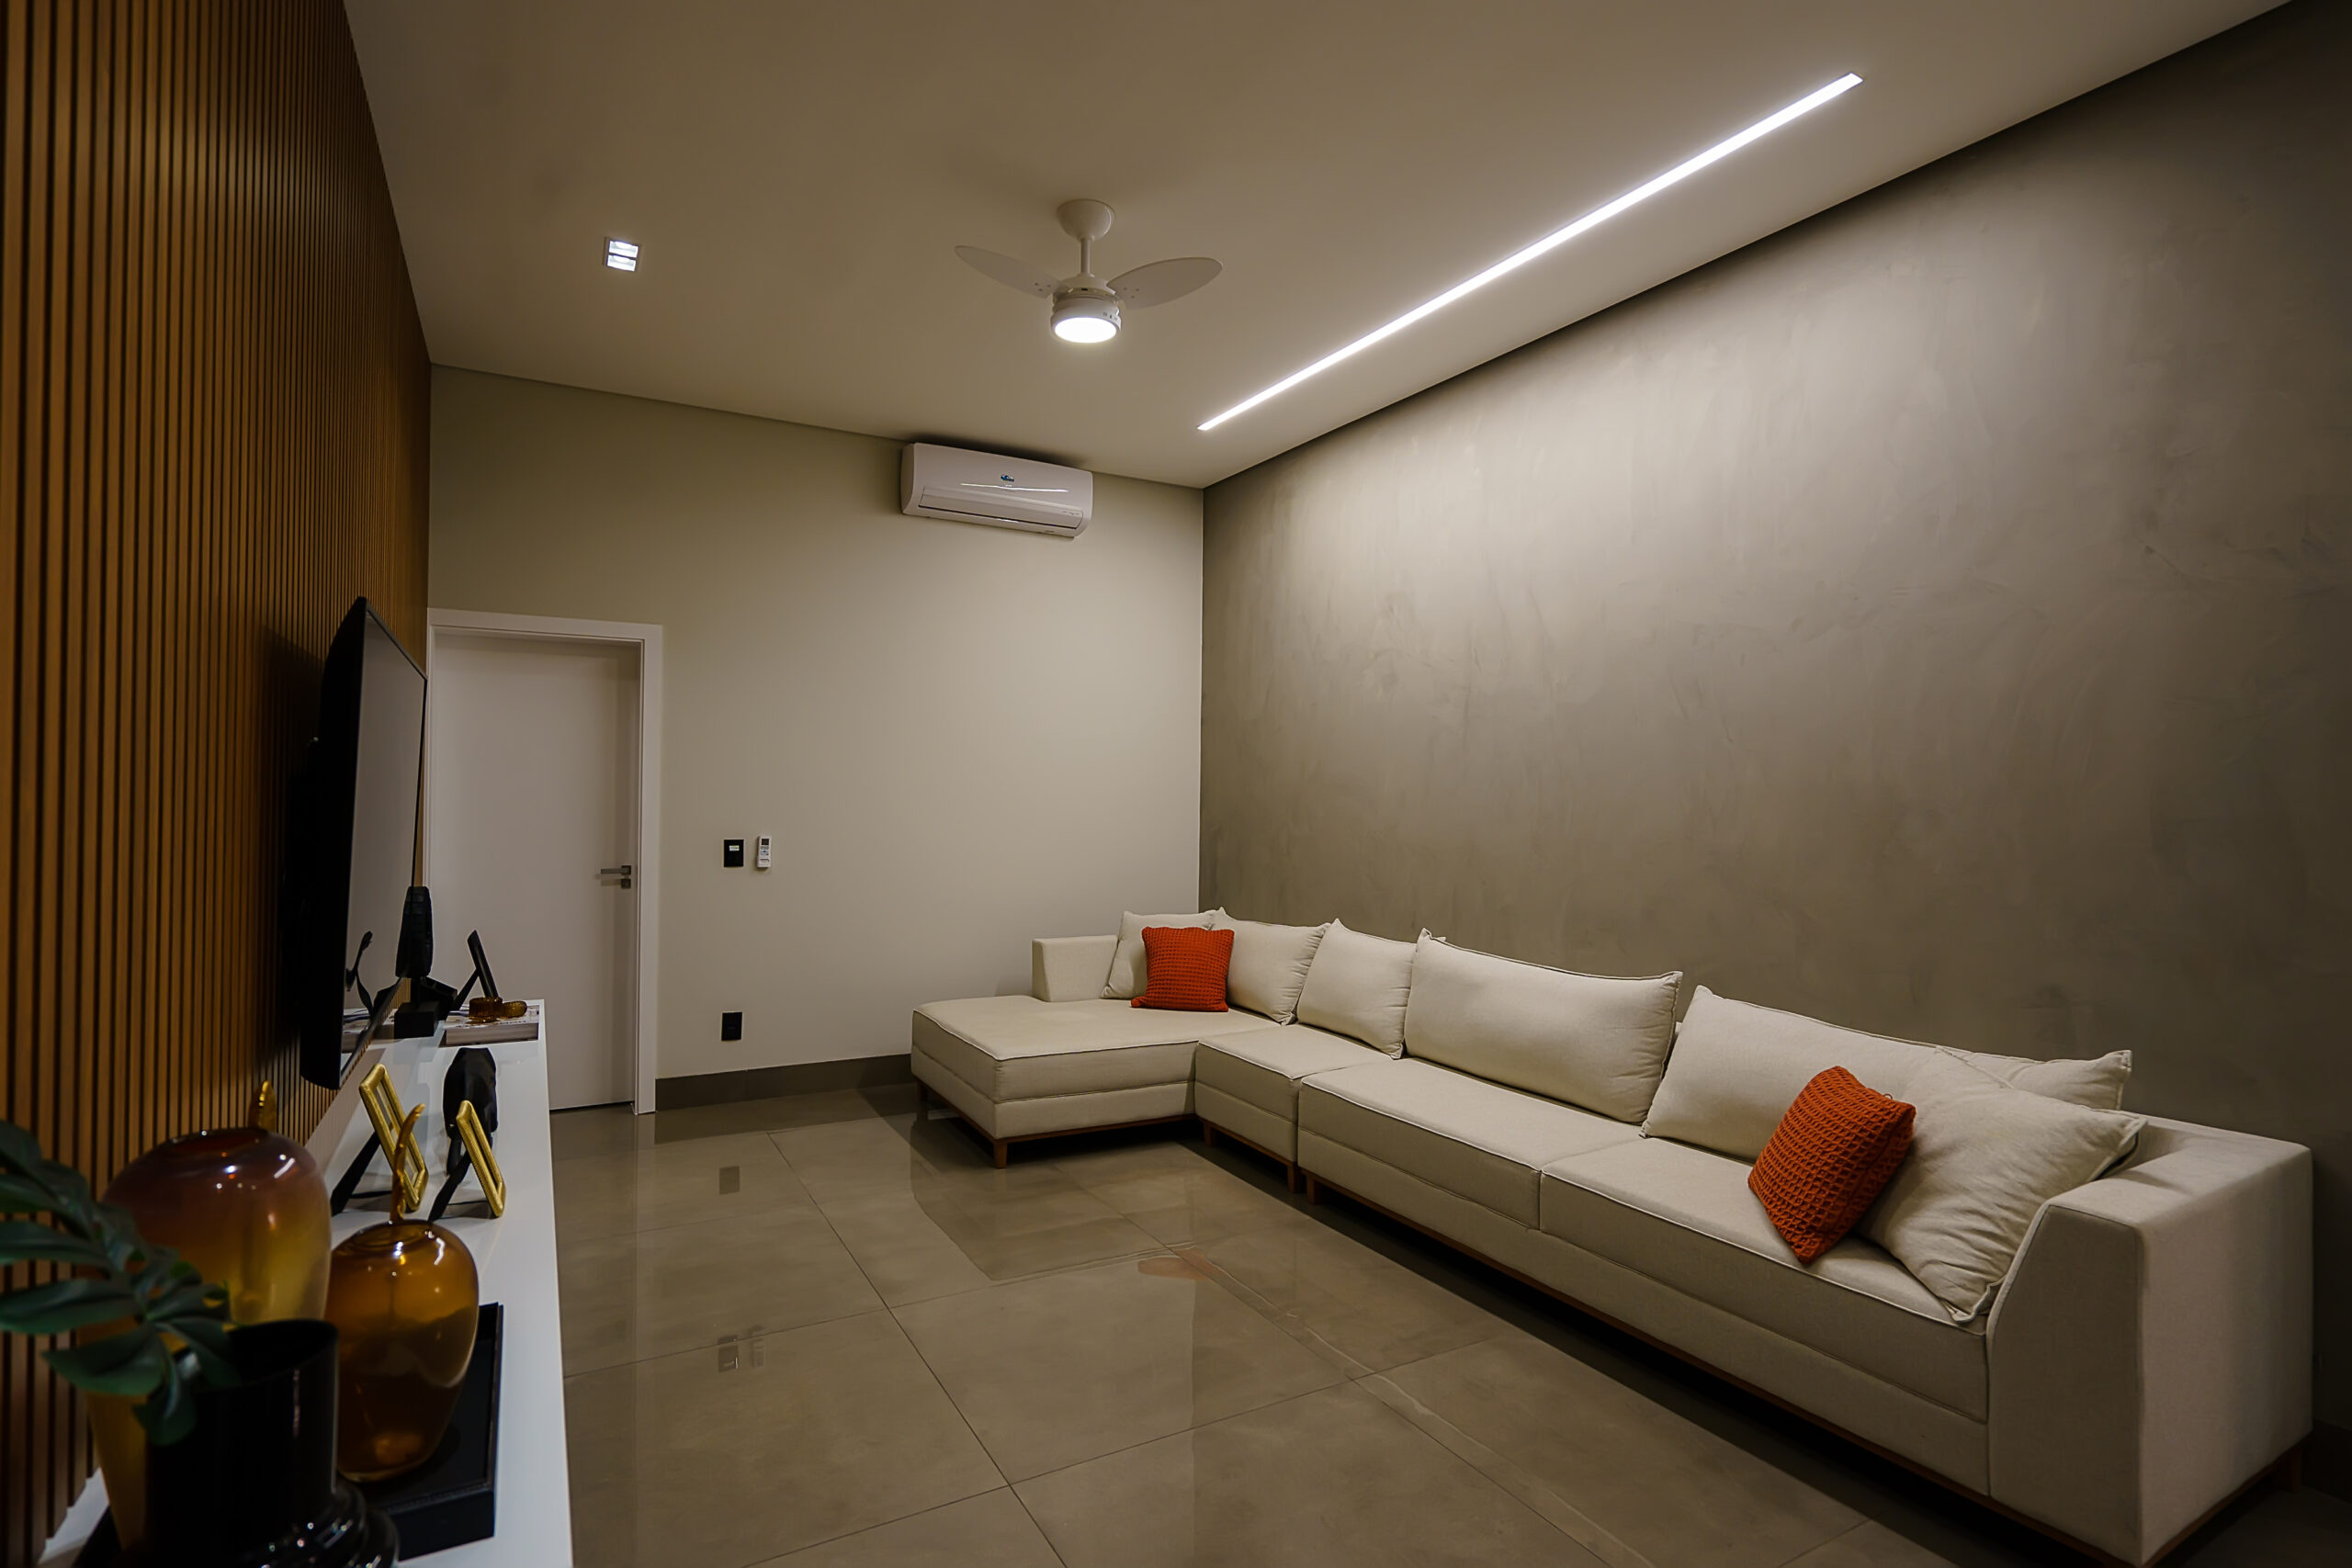 iluminação de uma sala de estar com perfil de LED, ventilador central e spots embutidos